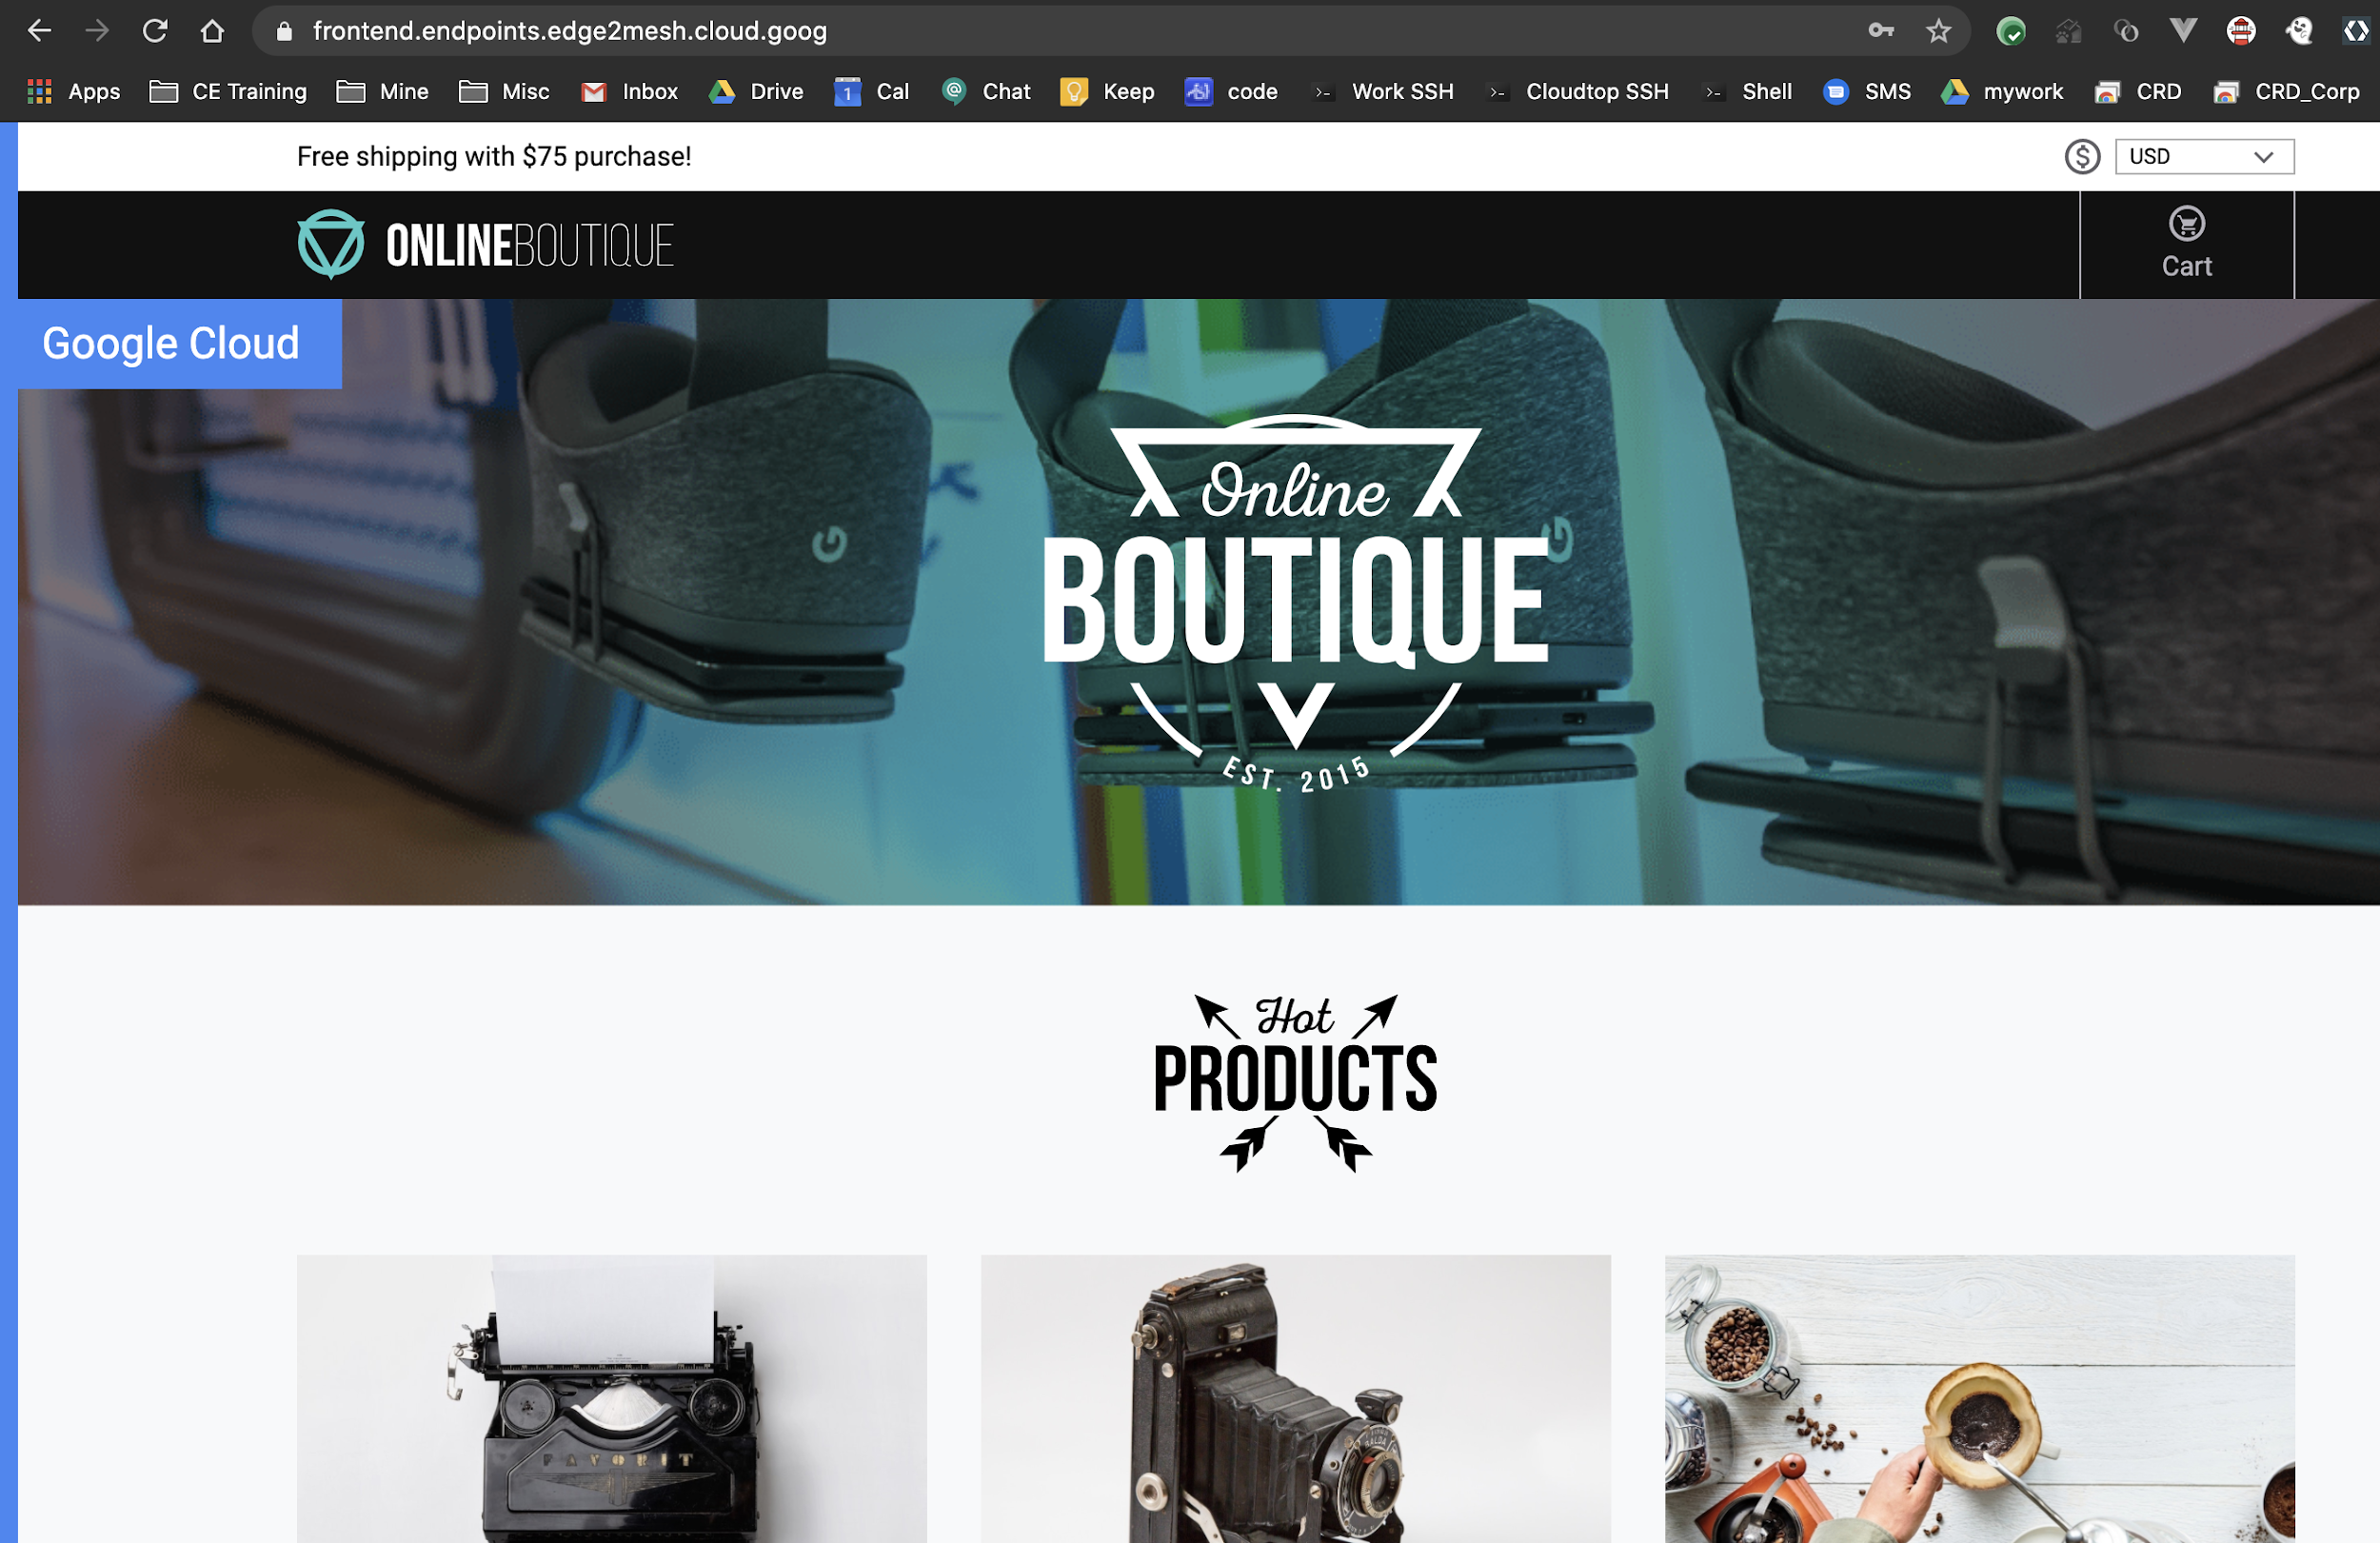 Productos que se muestran en la página principal de Online Boutique.